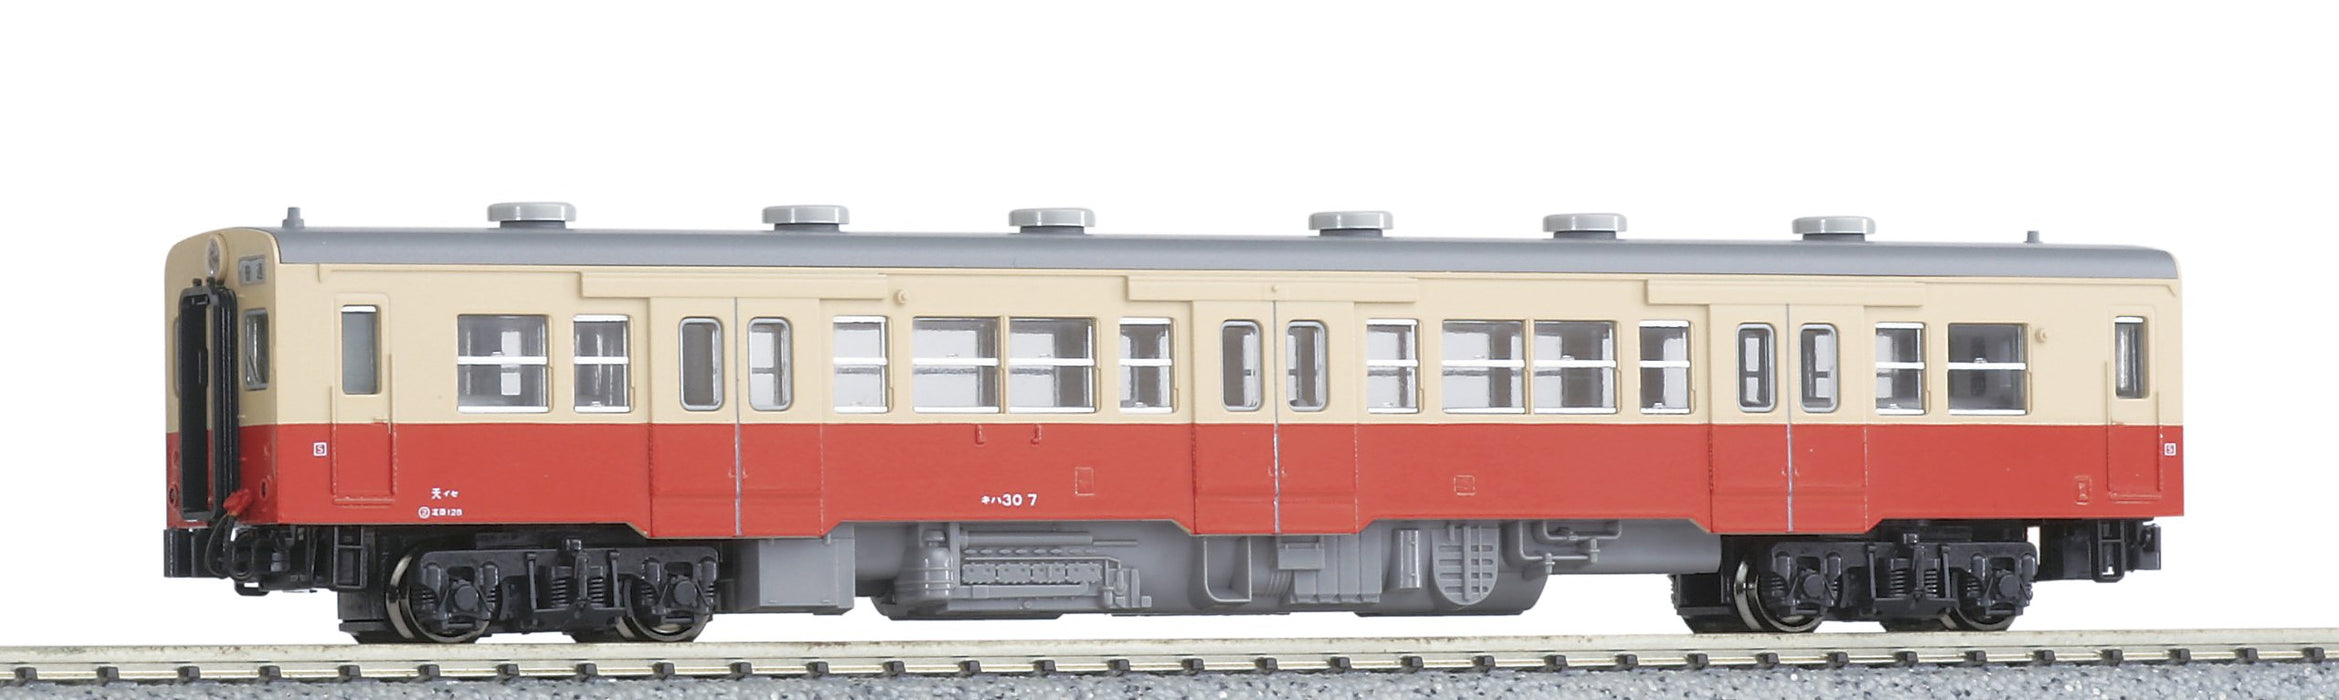 Kato N Gauge Kiha30 M 6072-1 Diesel Model Train Car in General Color